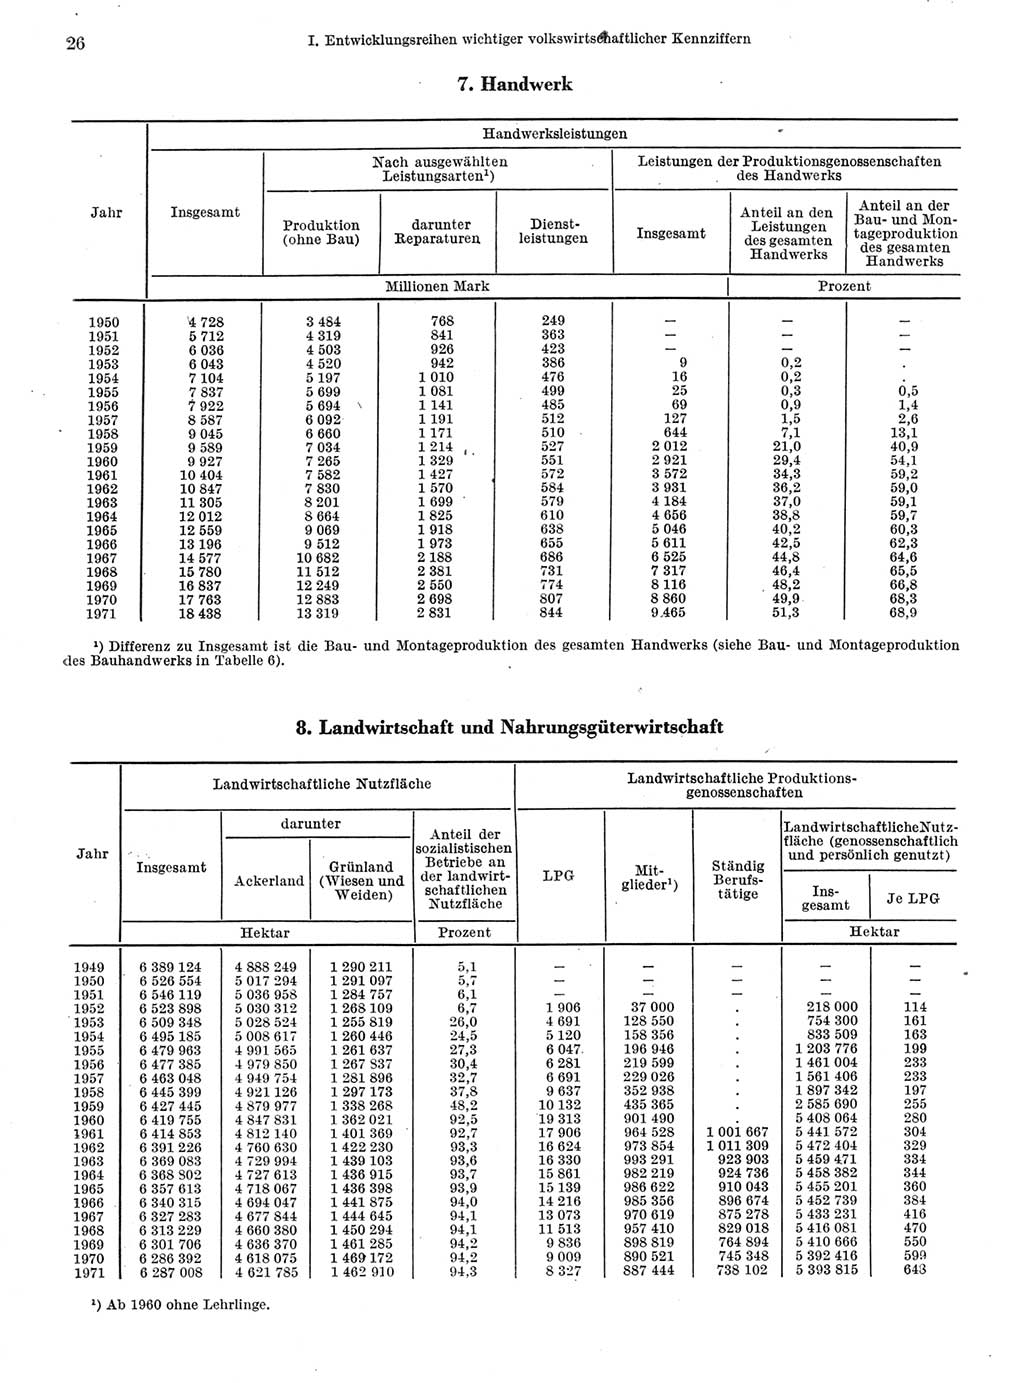 Statistisches Jahrbuch der Deutschen Demokratischen Republik (DDR) 1972, Seite 26 (Stat. Jb. DDR 1972, S. 26)